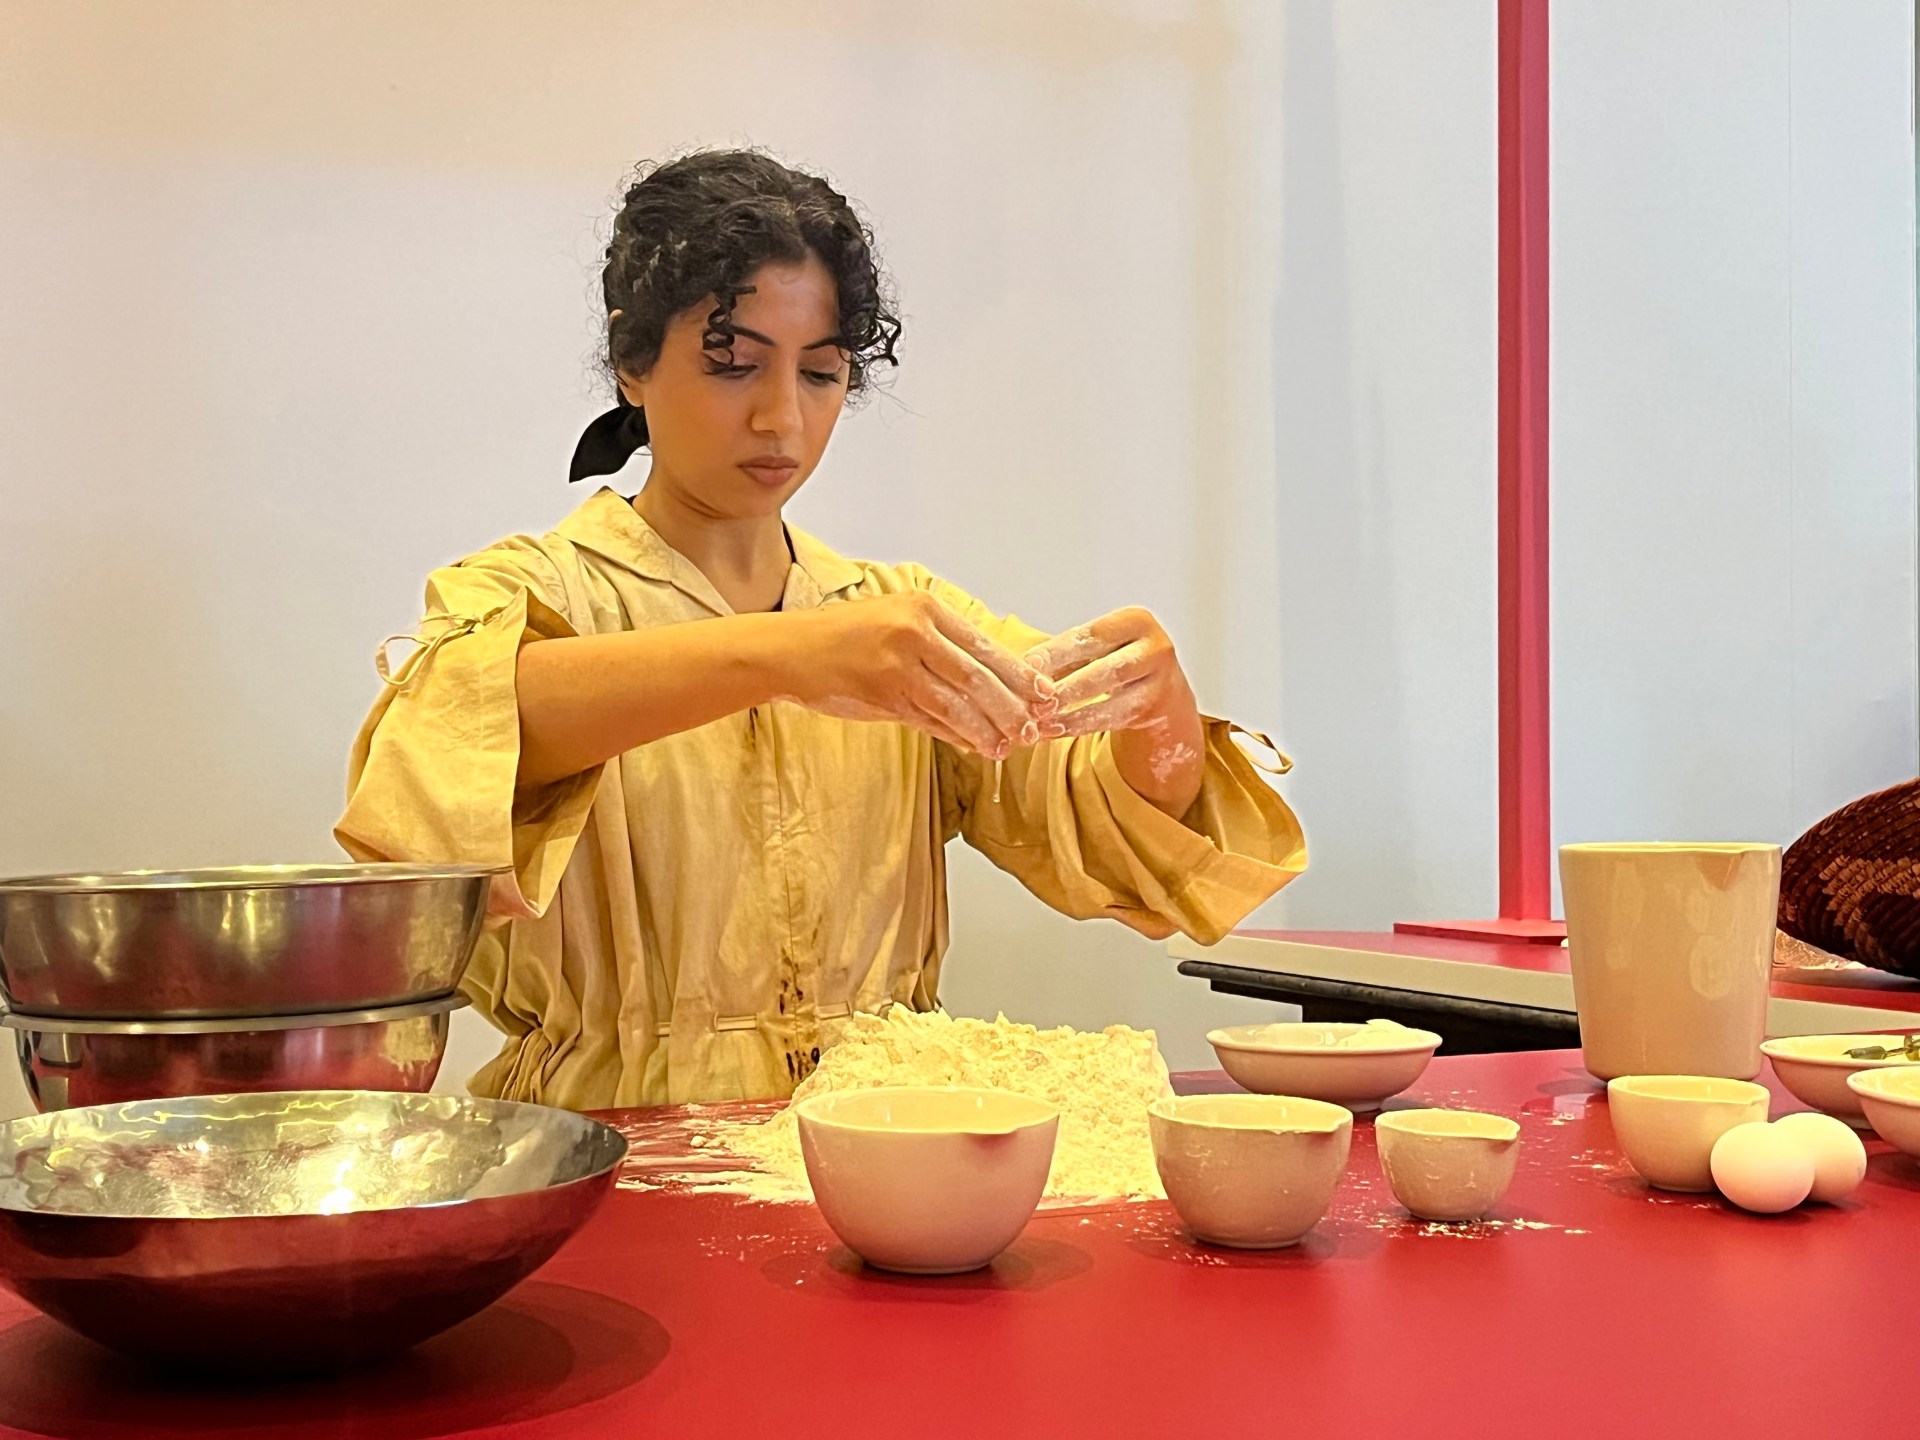 الخبز والجسد: تستكشف الفنانة المقيمة في الإمارات موزة المطروشي الطعام والروح  فن وثقافة